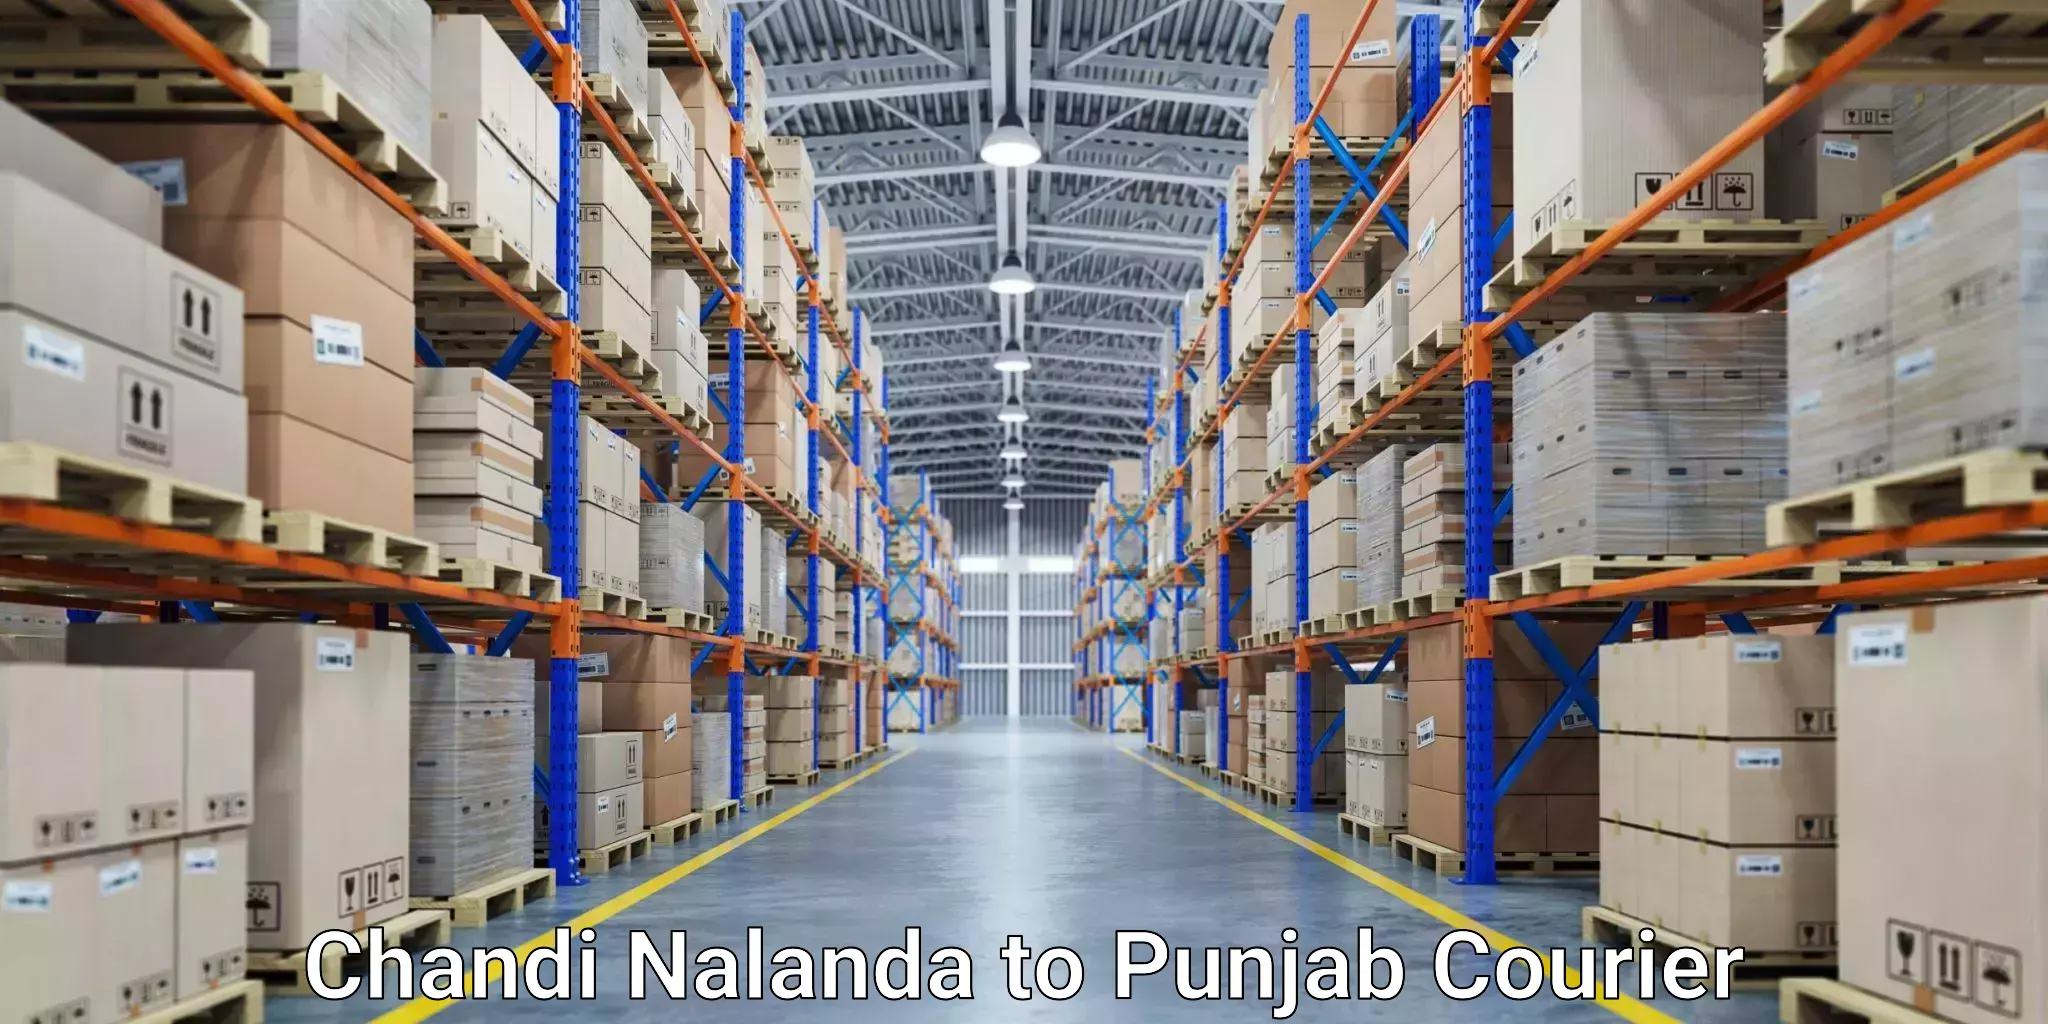 Ground shipping in Chandi Nalanda to Jhunir